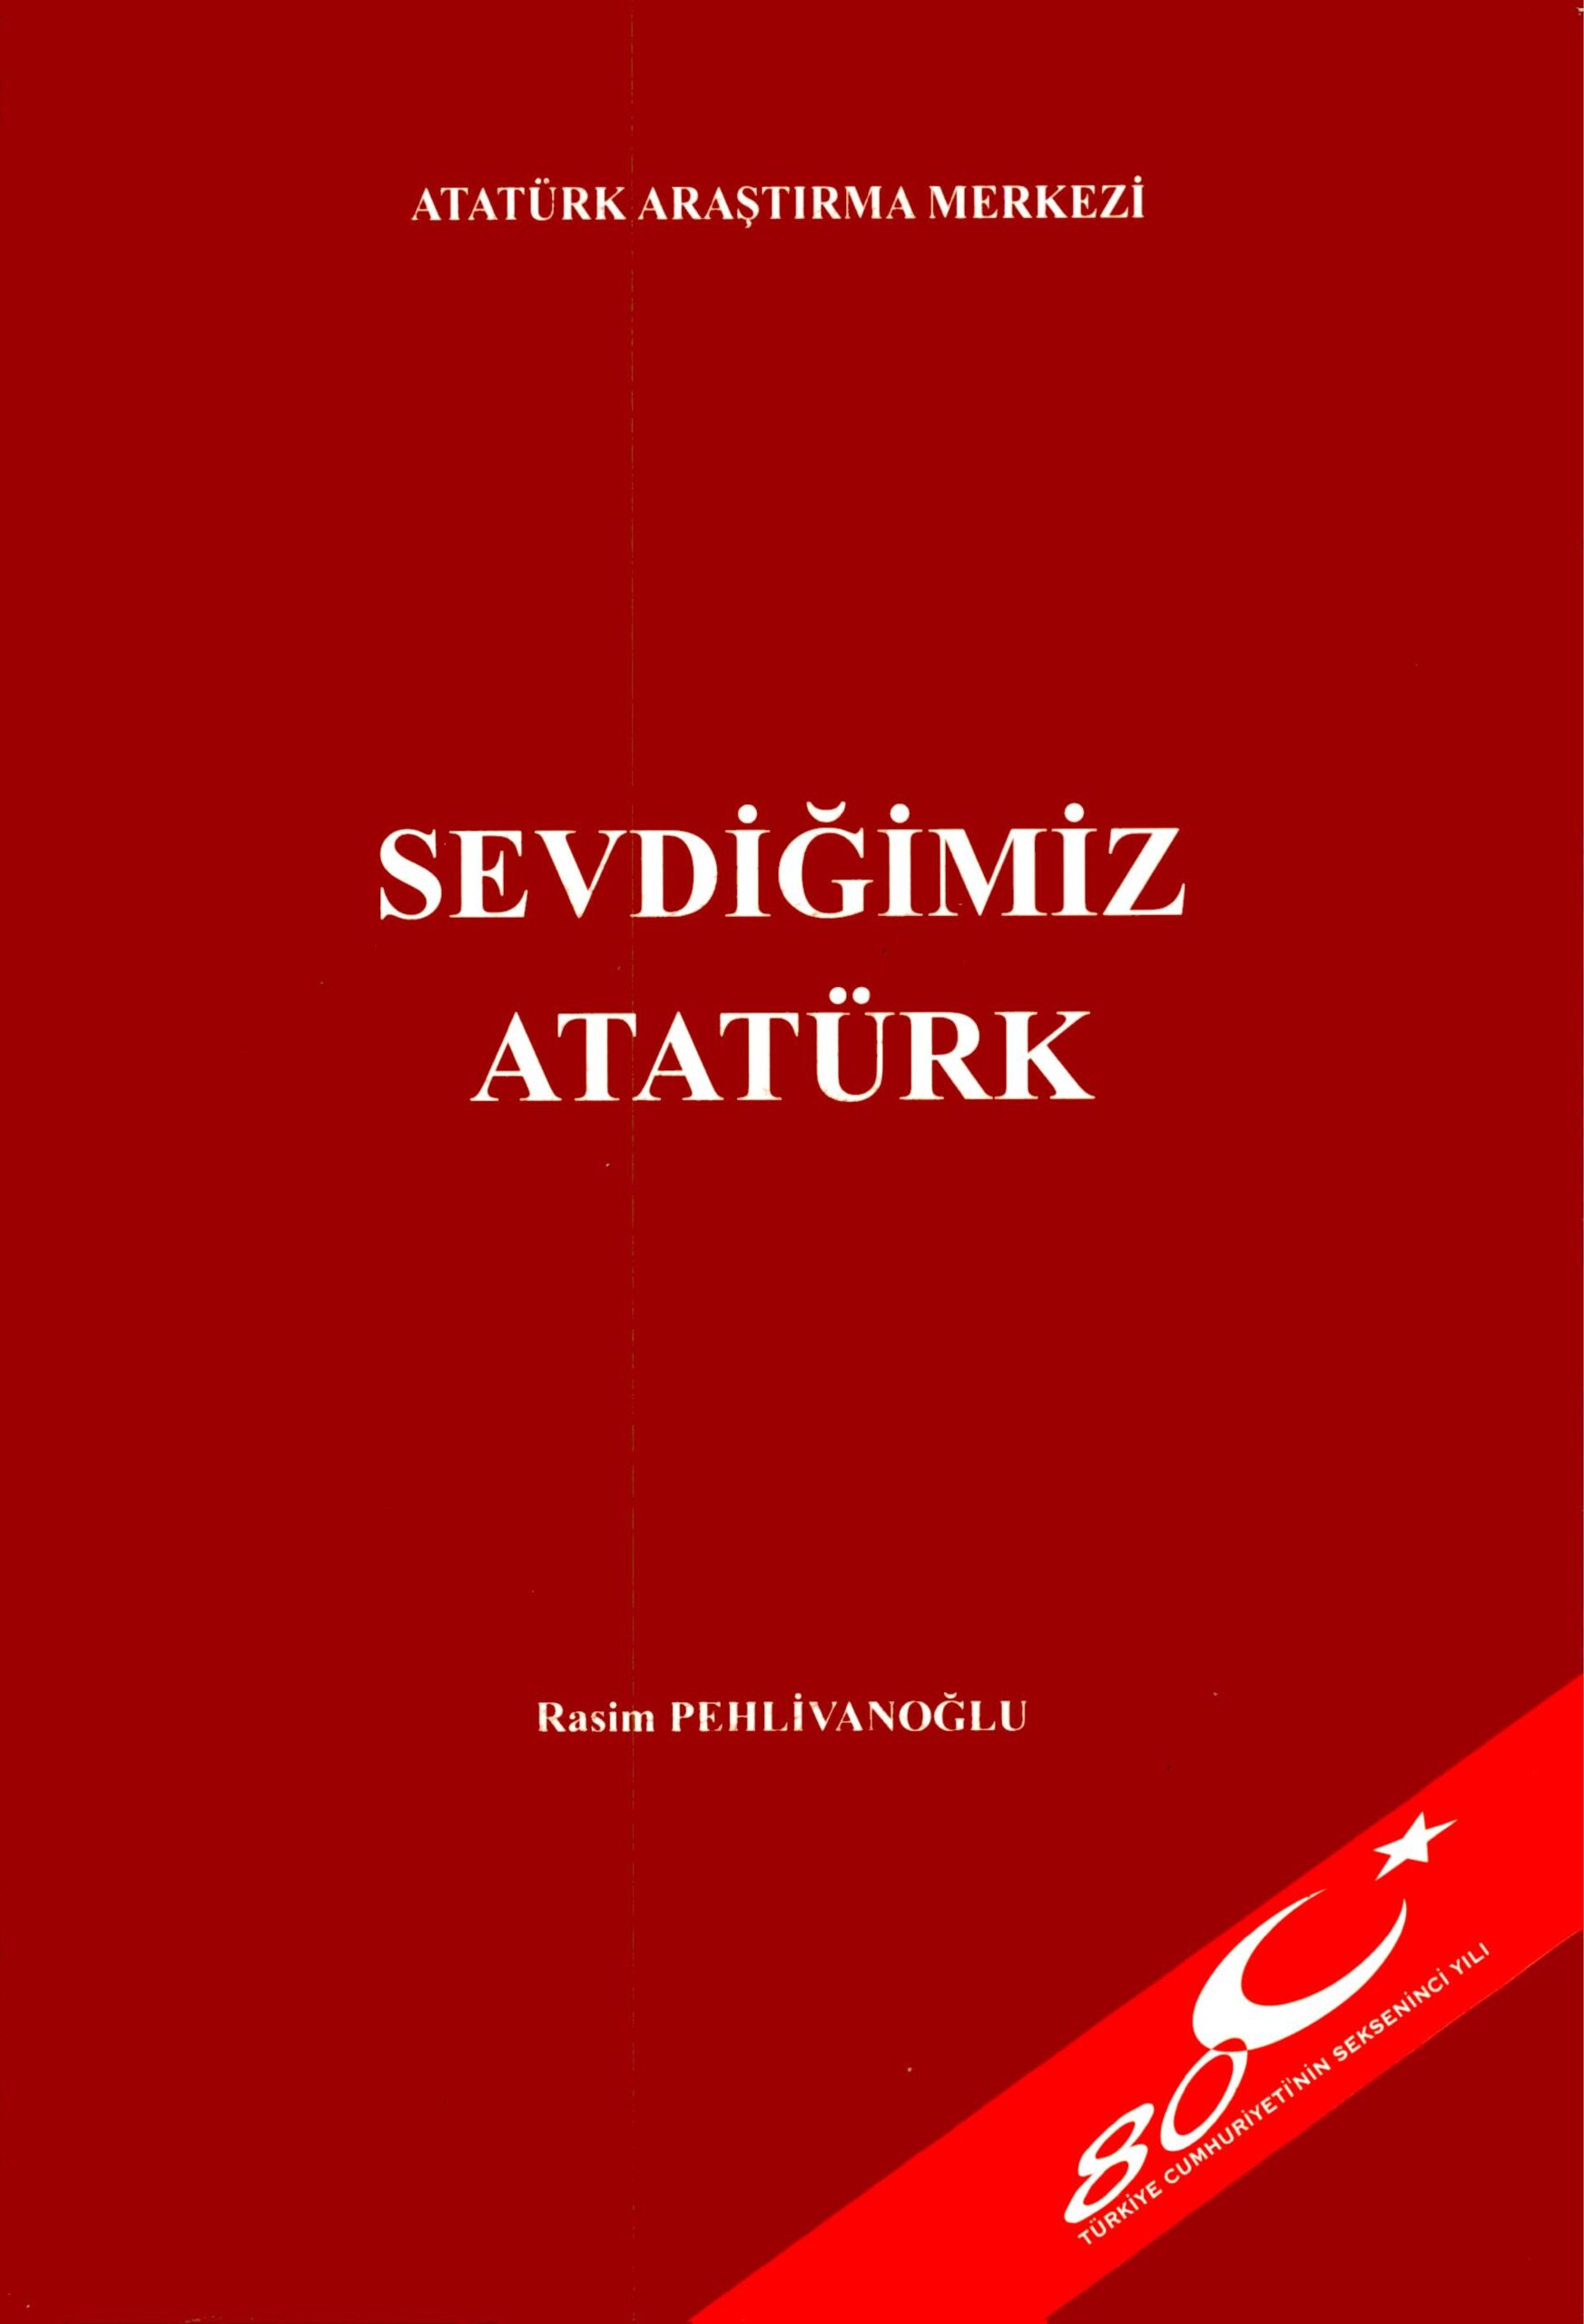 Sevdiğimiz Atatürk